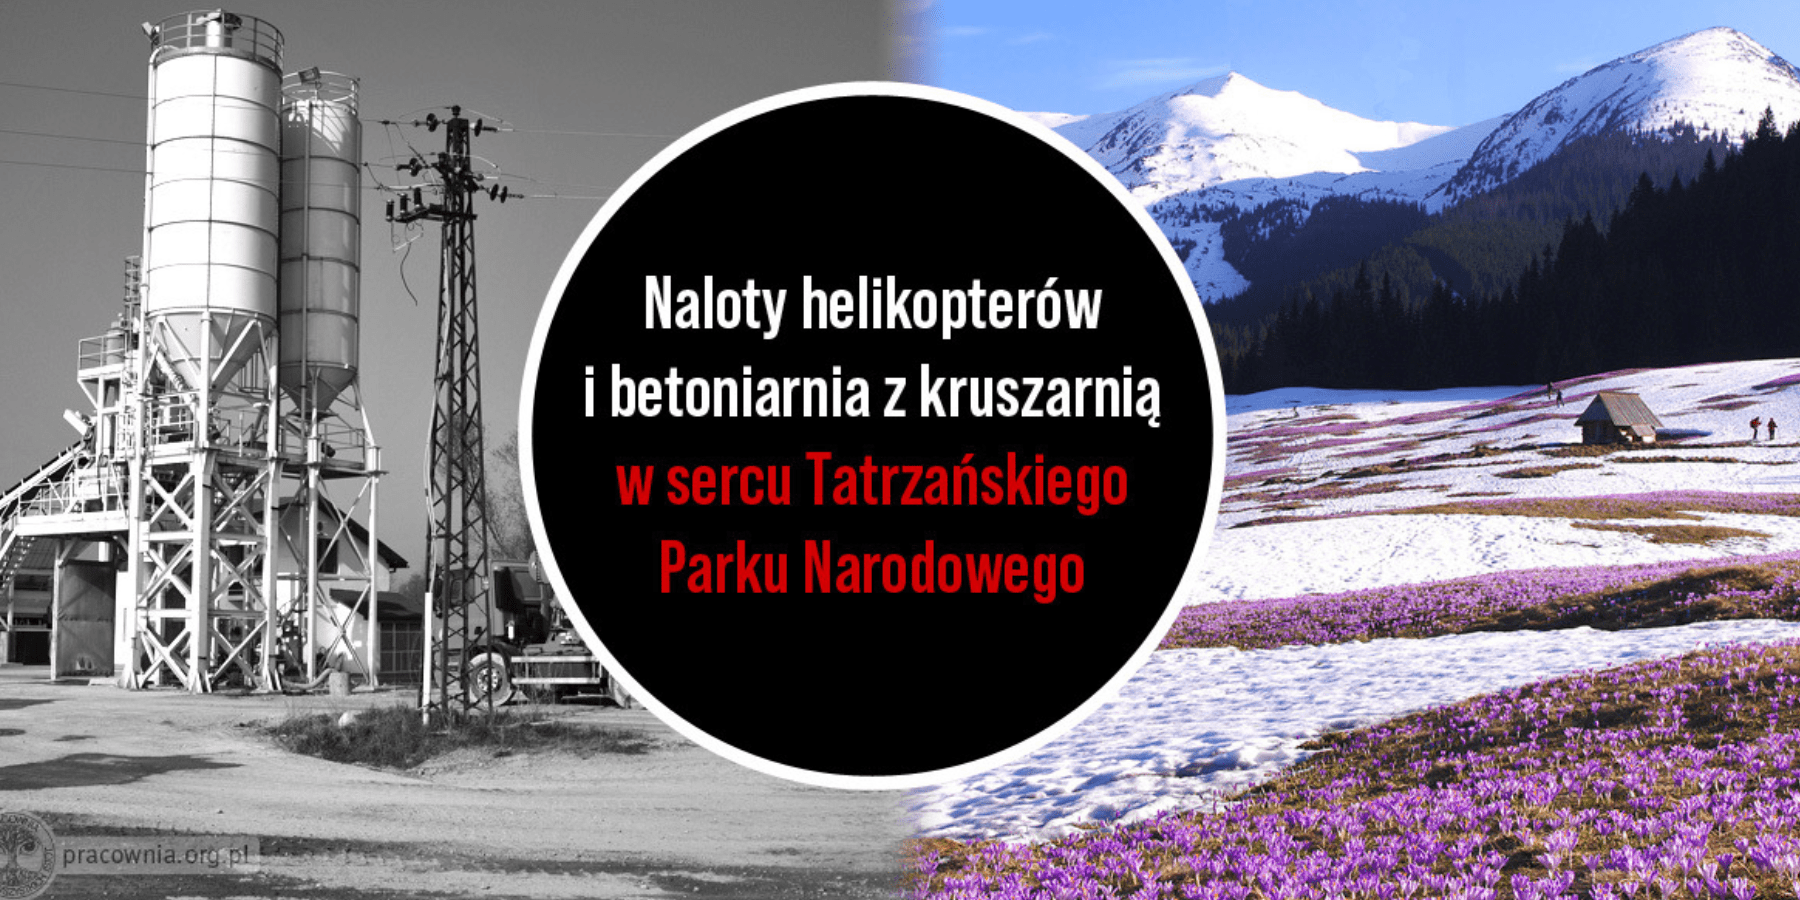 Burmistrz Zakopanego, Leszek Dorula, wydał skandaliczną decyzję o środowiskowych uwarunkowaniach dla modernizacji infrastruktury narciarskiej w rejonie Kasprowego Wierchu i Doliny Goryczkowej. Naukowcy i ekolodzy biją na alarm - musimy chronić bezcenną przyrodę Tatr.